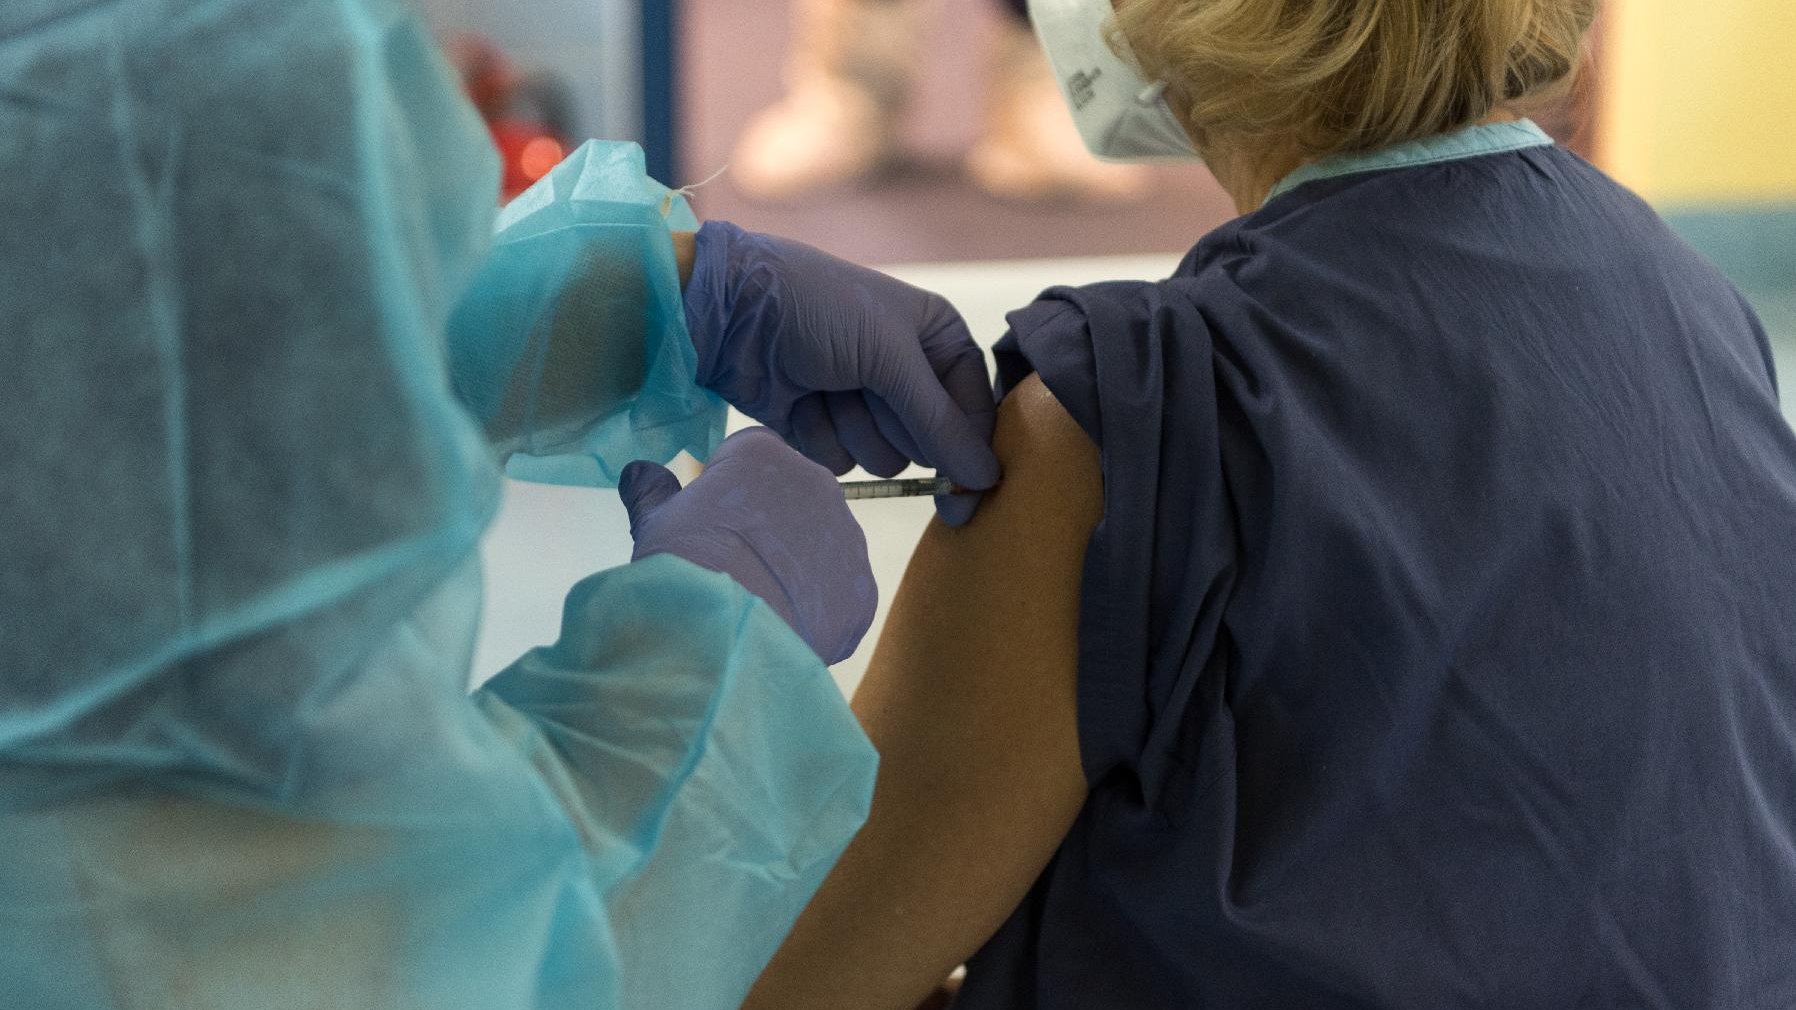 Na zdjęciu szczepienie: osoba w medycznym stroju szczepi kobietę; nie widać ich twarzy, w centrum zdjęcia dłonie ze szczepionką - grafika artykułu